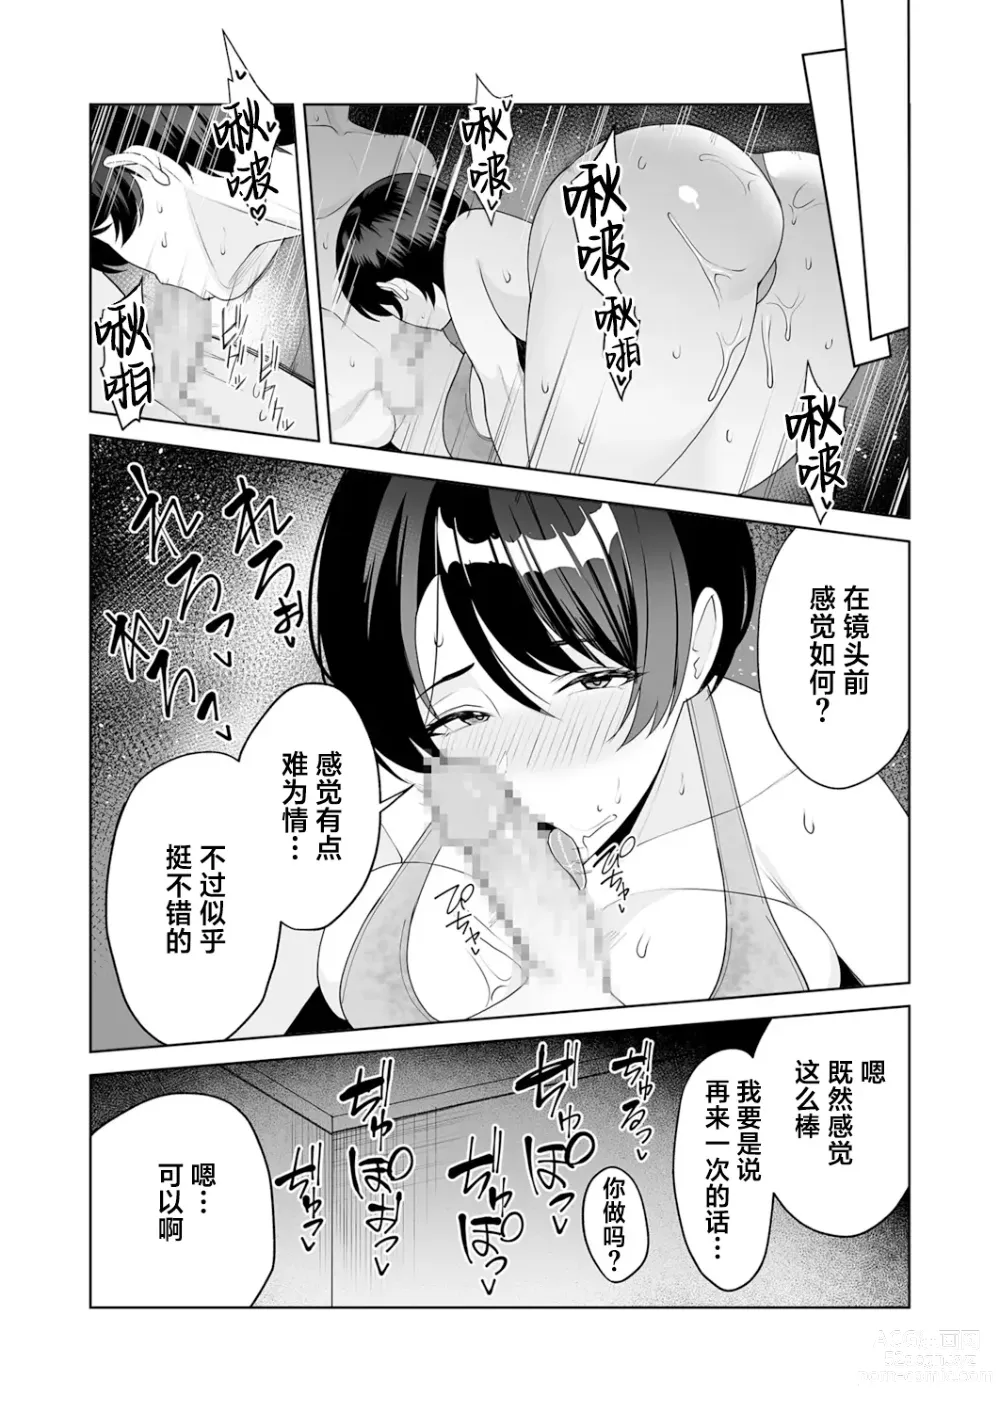 Page 144 of manga Gibo-san wa boku no mono 1-6